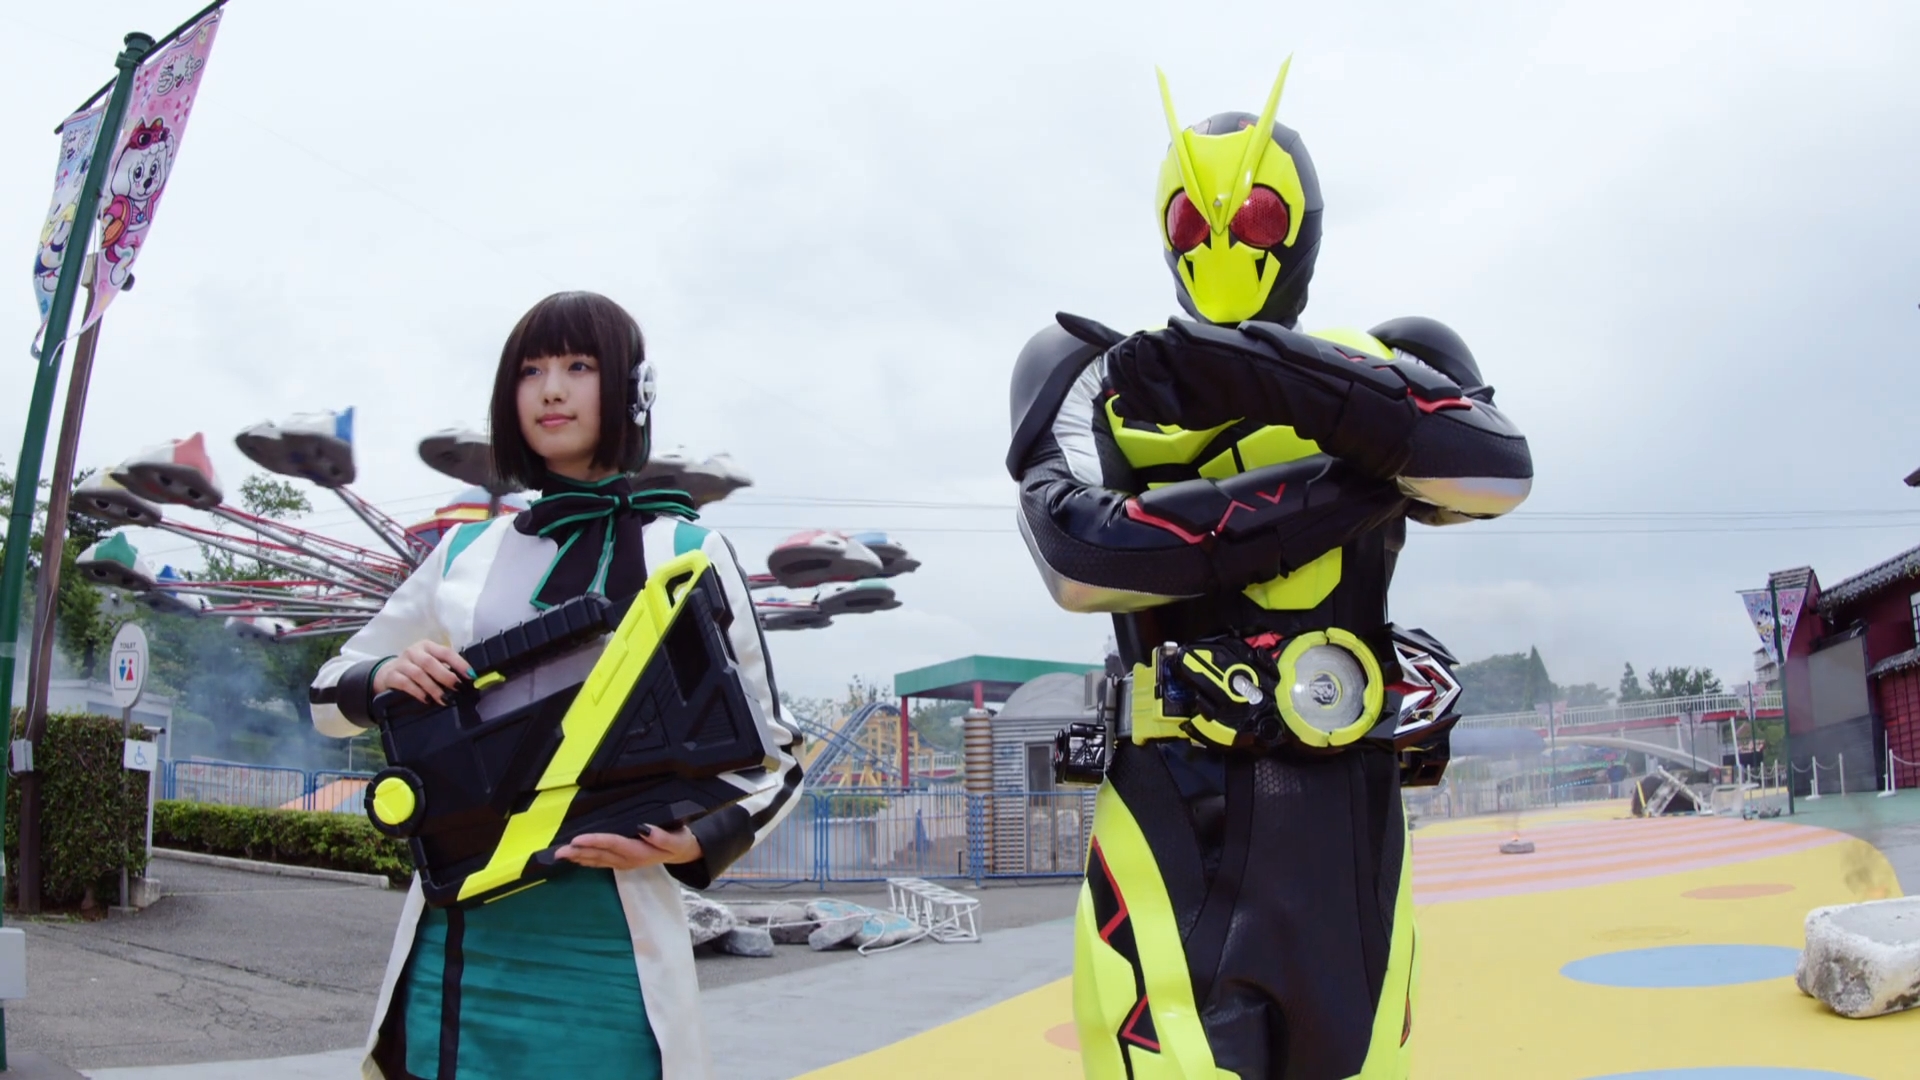 Skyline Media mua bản quyền “Kamen Rider” để công chiếu ở Việt Nam - Ảnh 3.